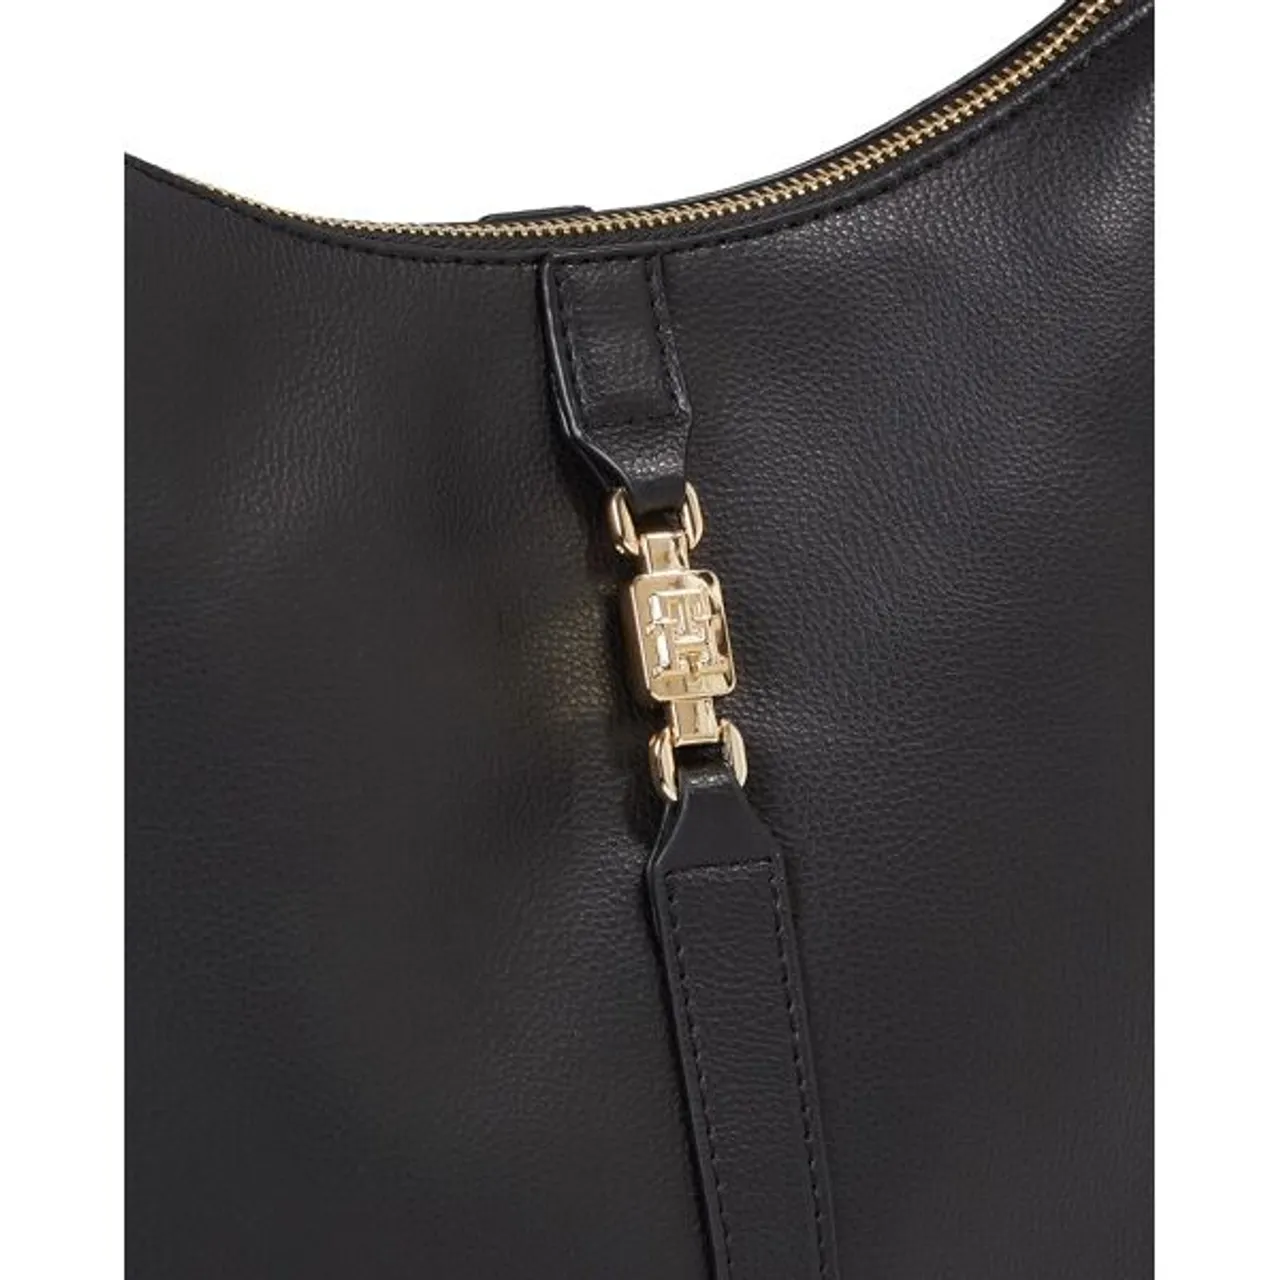 Hobo TOMMY HILFIGER "TH FEMININE HOBO" Gr. B/H/T: 32 cm x 27 cm x 13 cm, schwarz (black) Damen Taschen Handtaschen